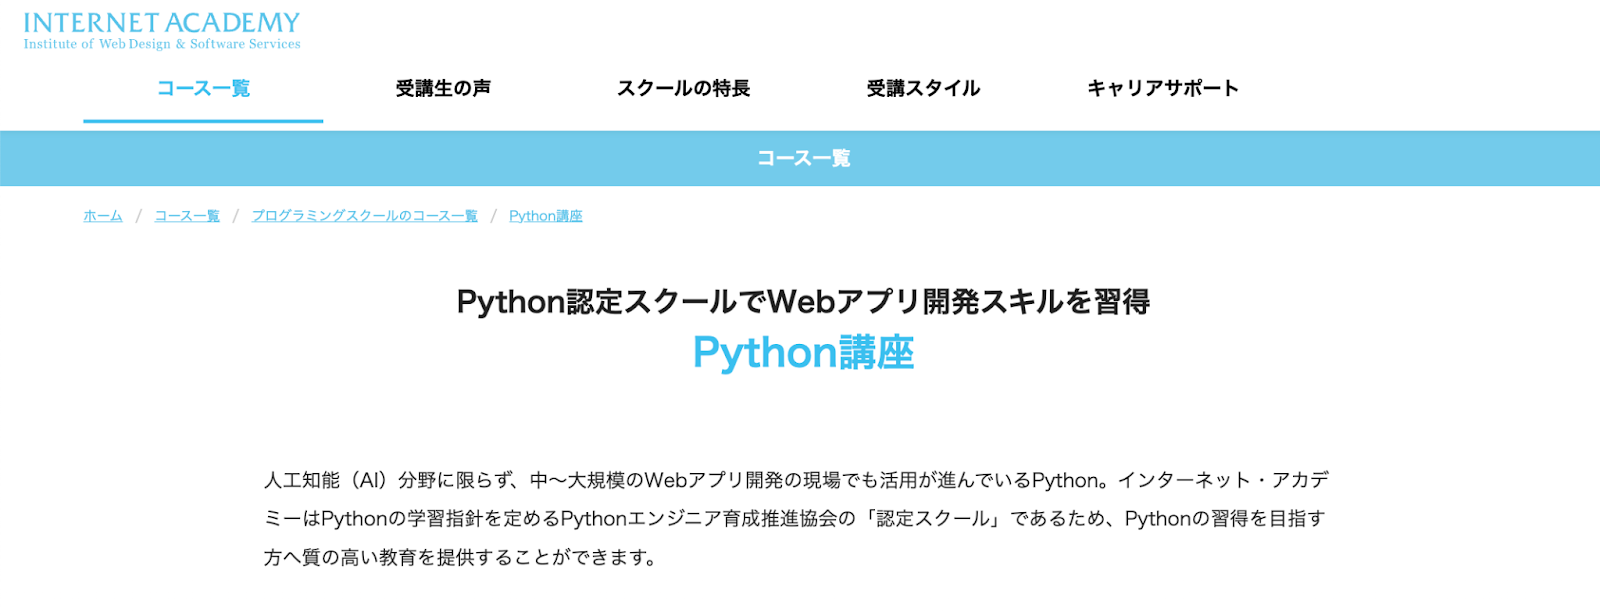 インターネットアカデミー「Python講座」